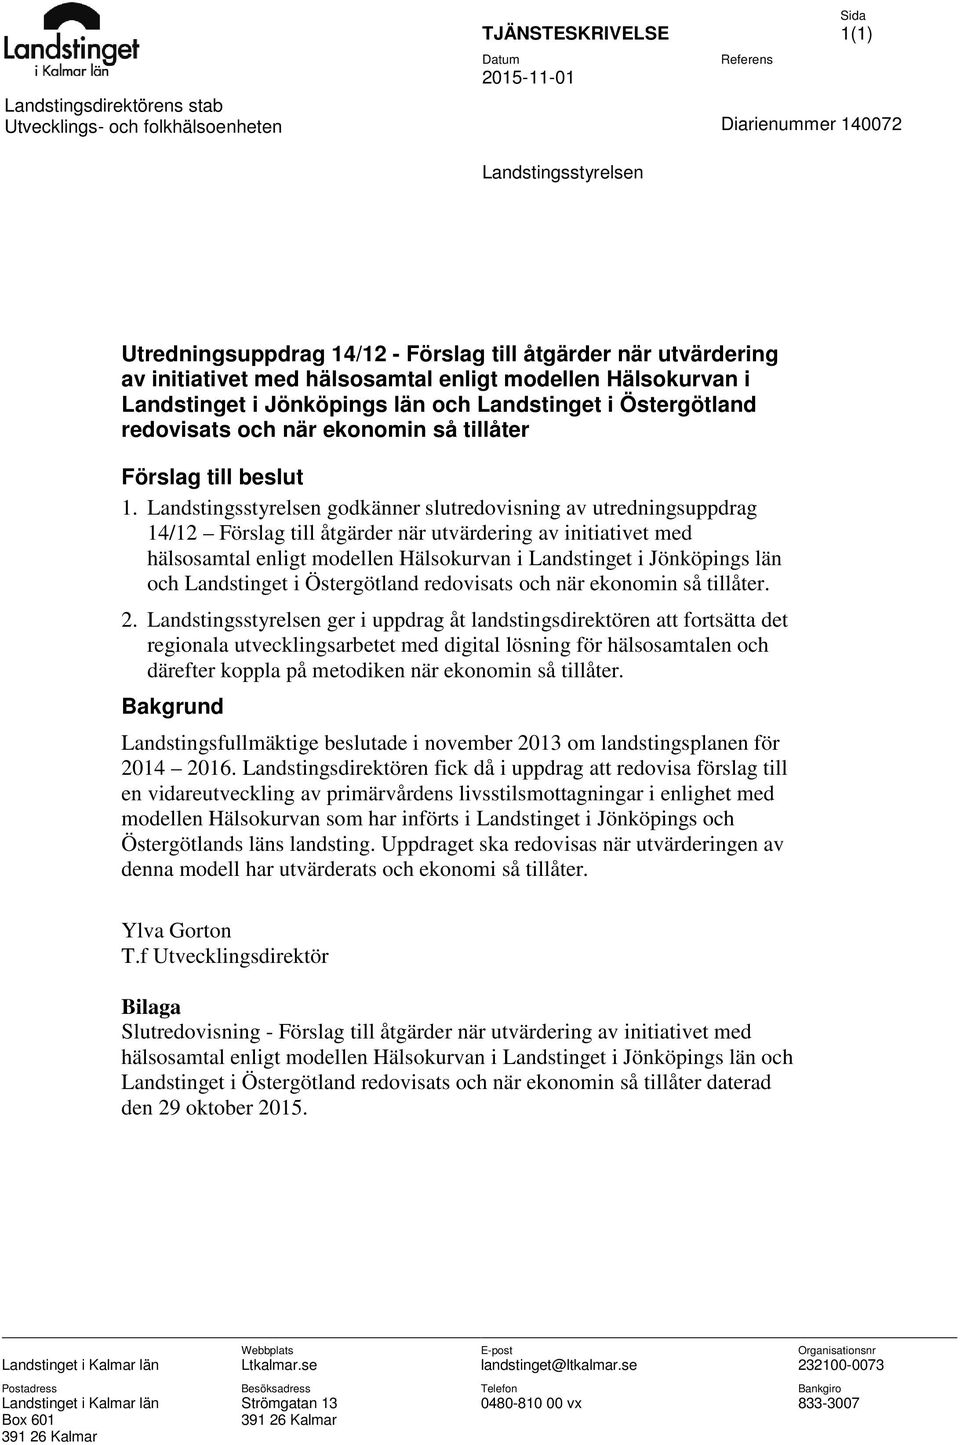 Landstingsstyrelsen godkänner slutredovisning av utredningsuppdrag 14/12 Förslag till åtgärder när utvärdering av initiativet med hälsosamtal enligt modellen Hälsokurvan i Landstinget i Jönköpings